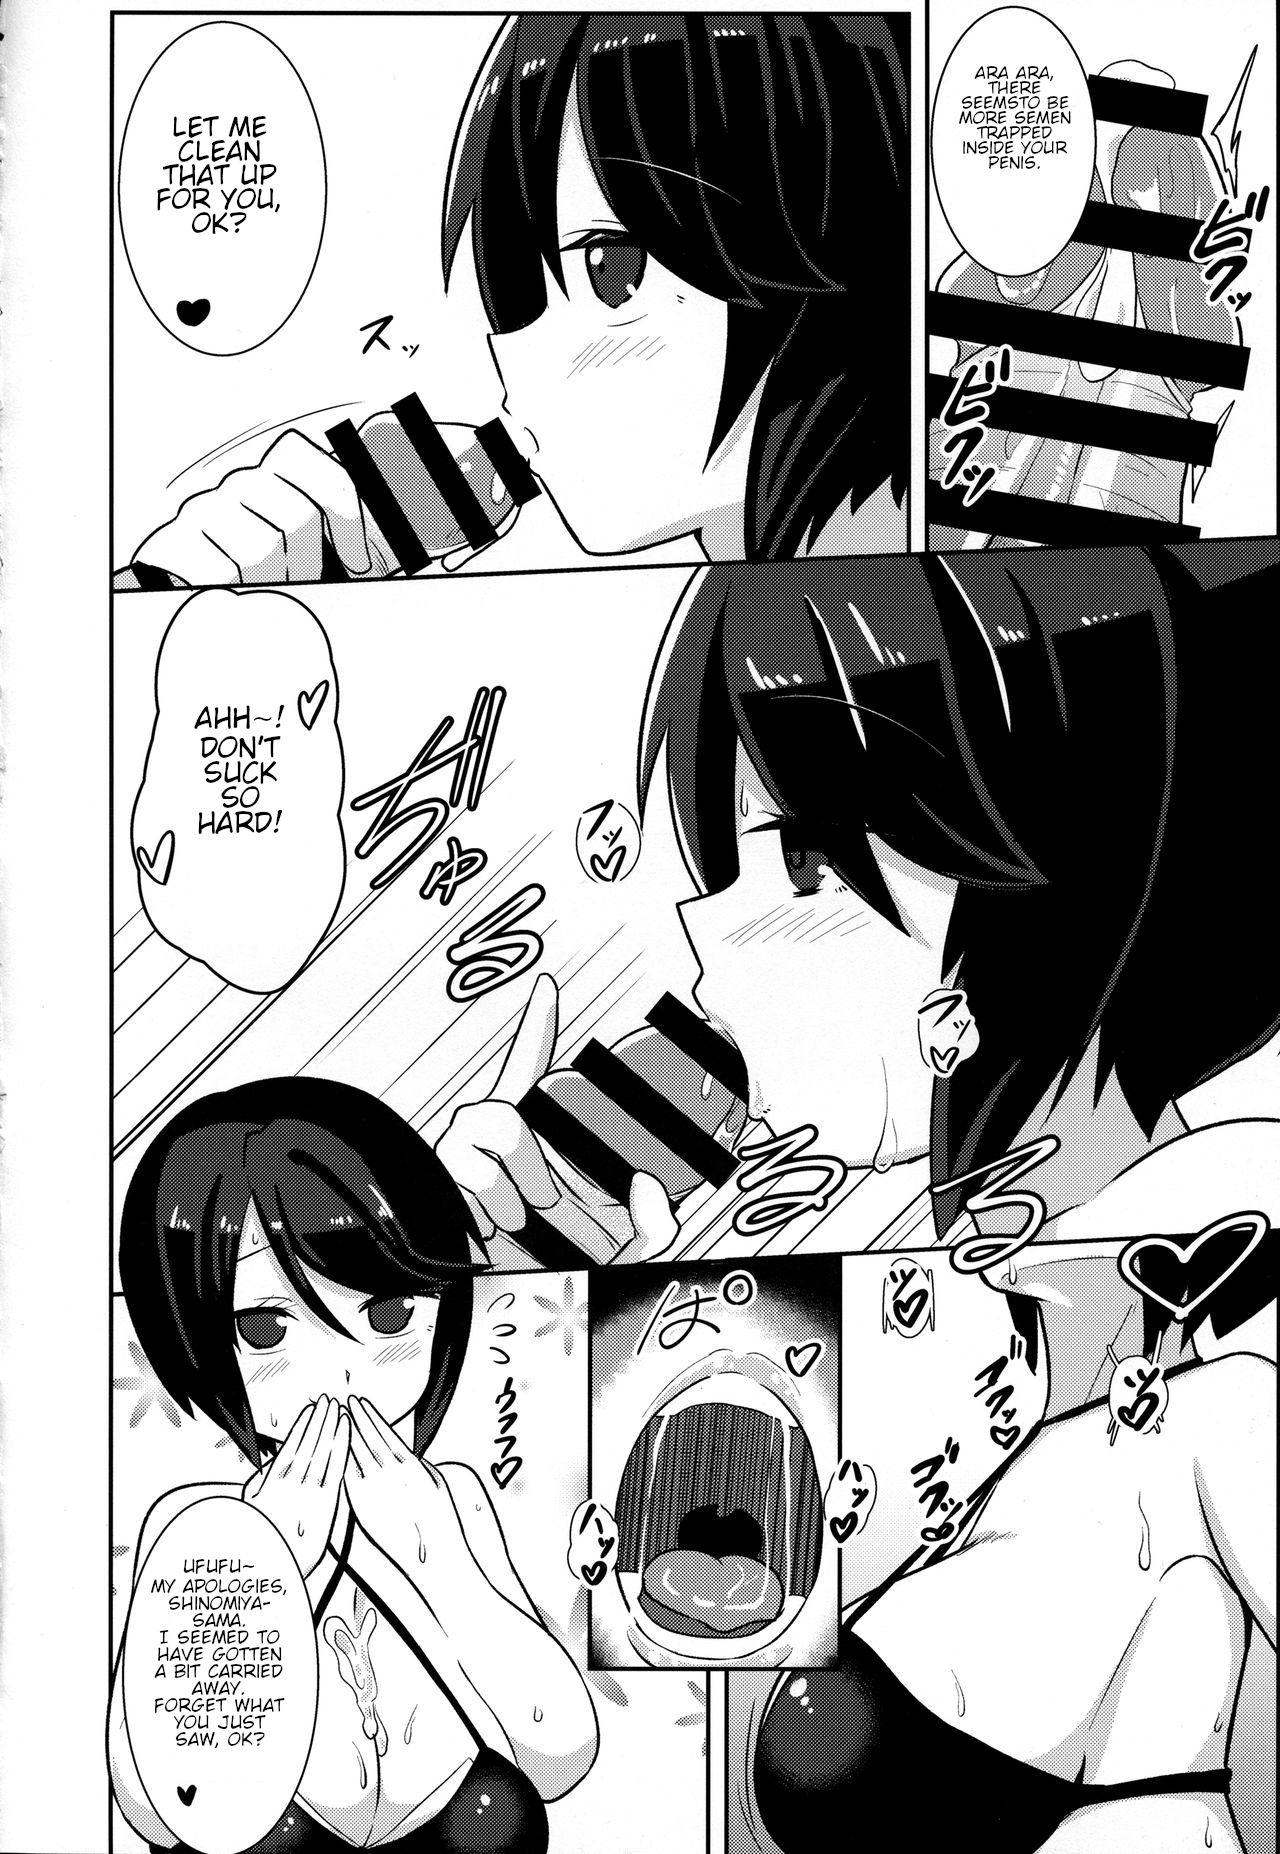 Girls Getting Fucked Watashi ni Omakase Kudasai. MAID No Limit - Gj bu Ametuer Porn - Page 13